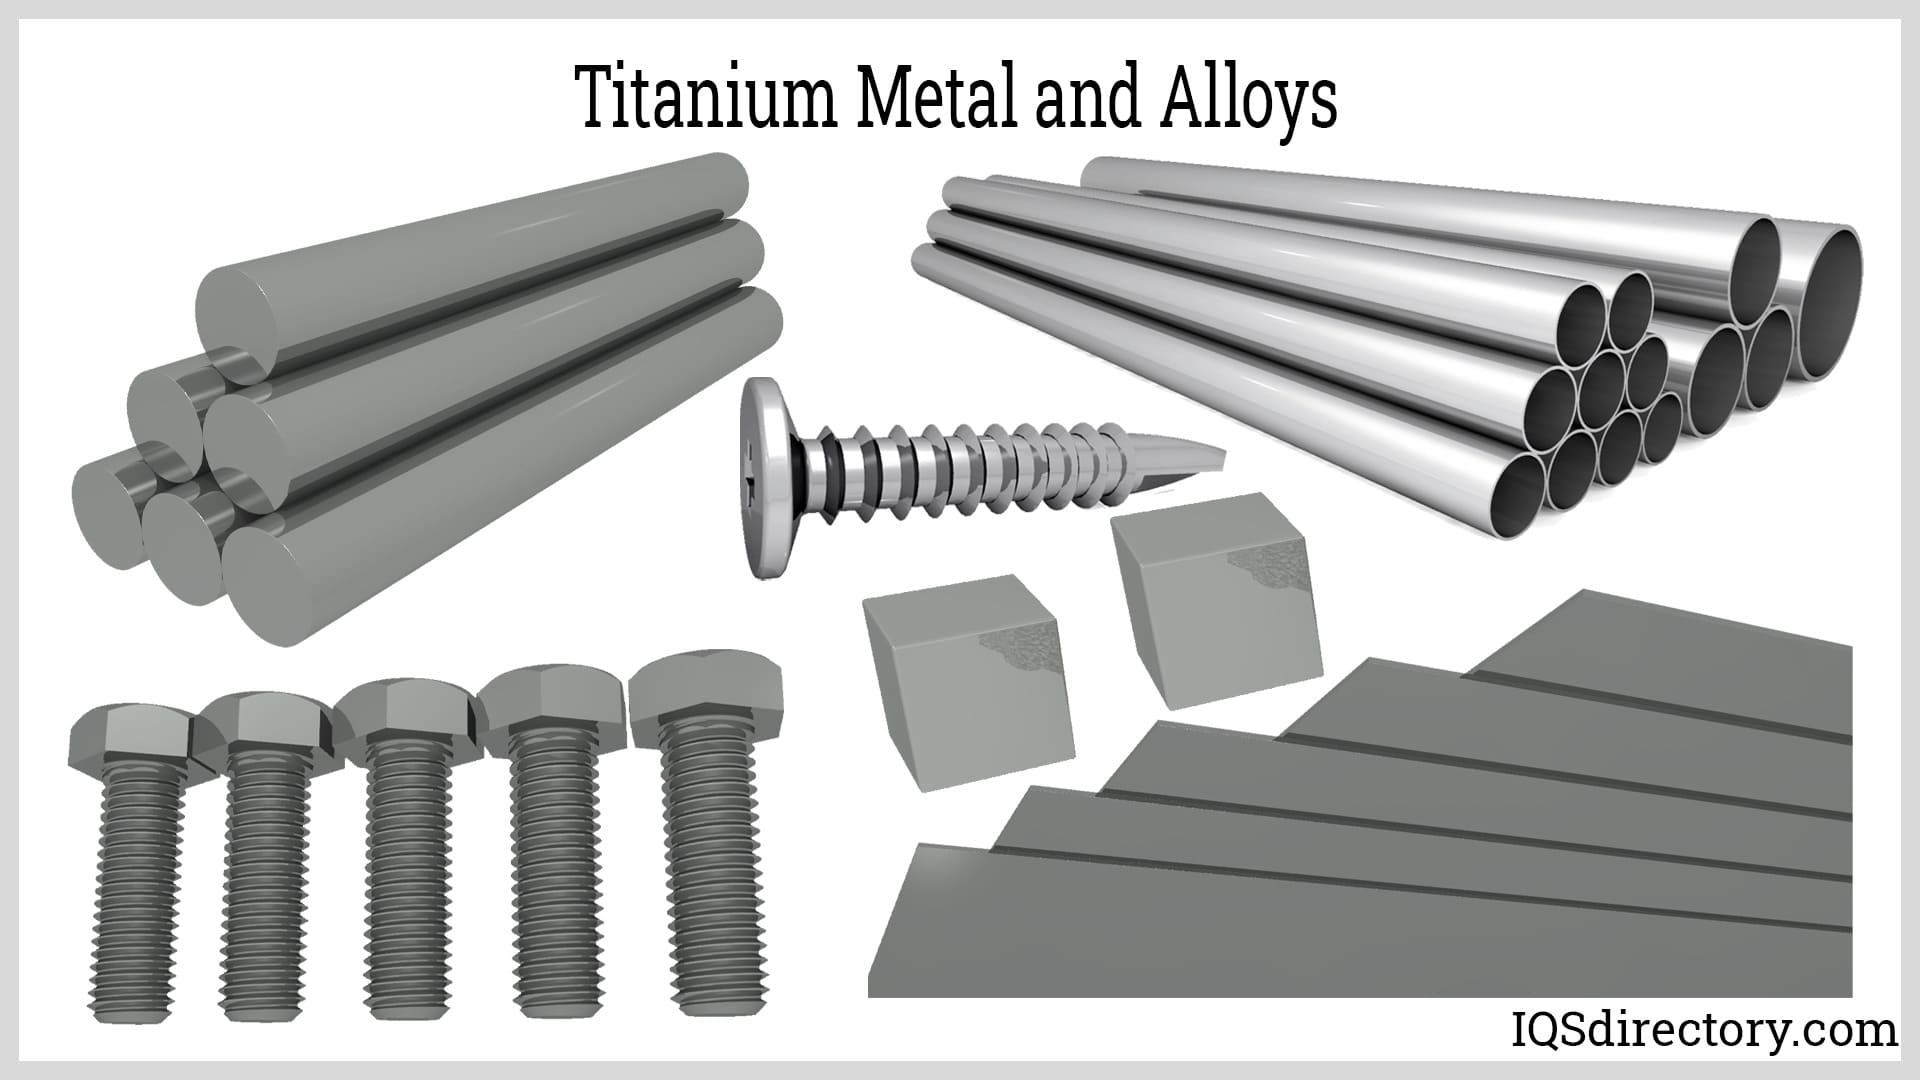 Titanium Metal and Alloys